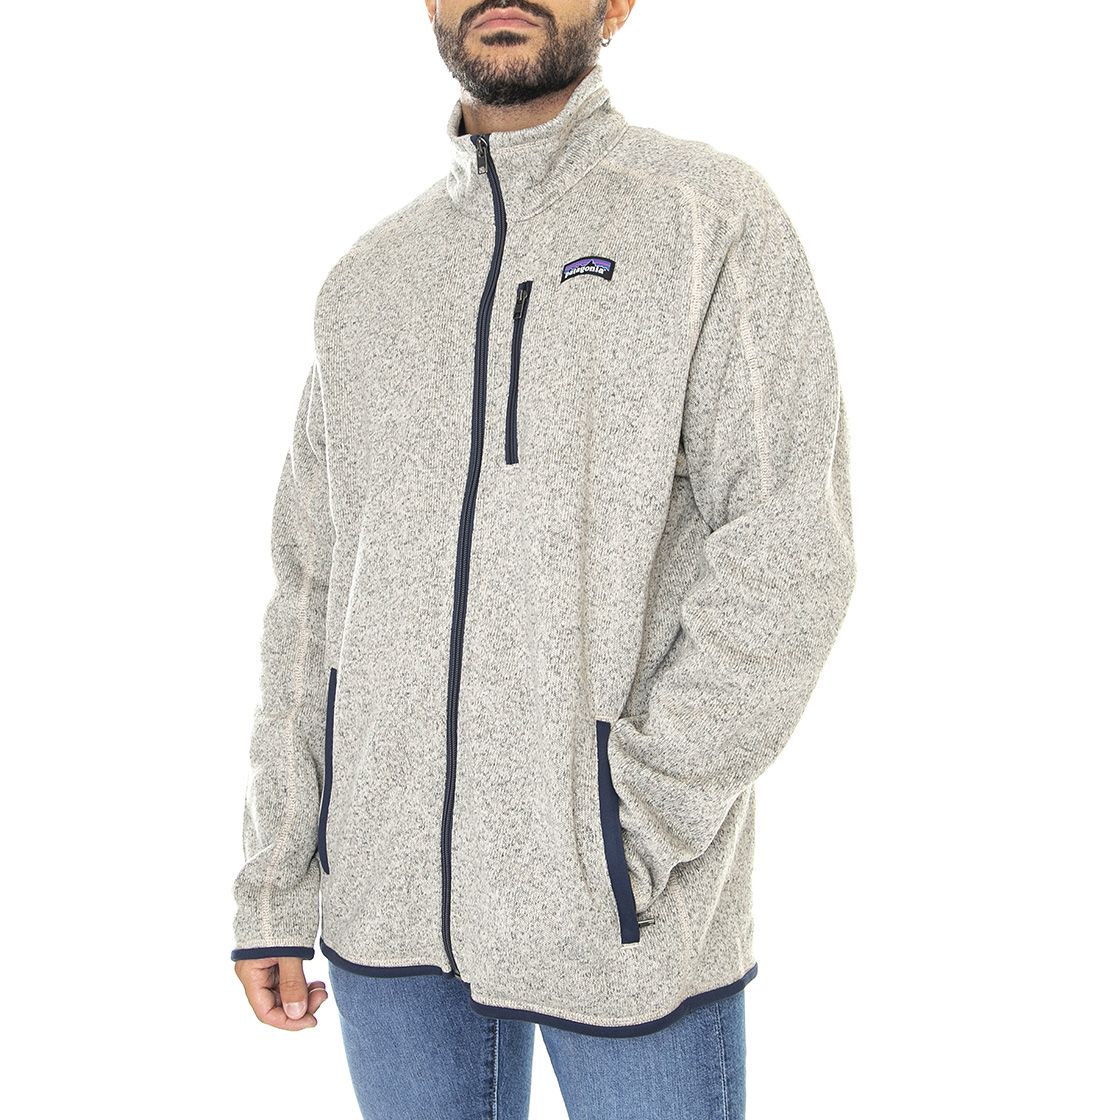 Patagonia Better Sweater Jacket Men's, Oar Tan, XL